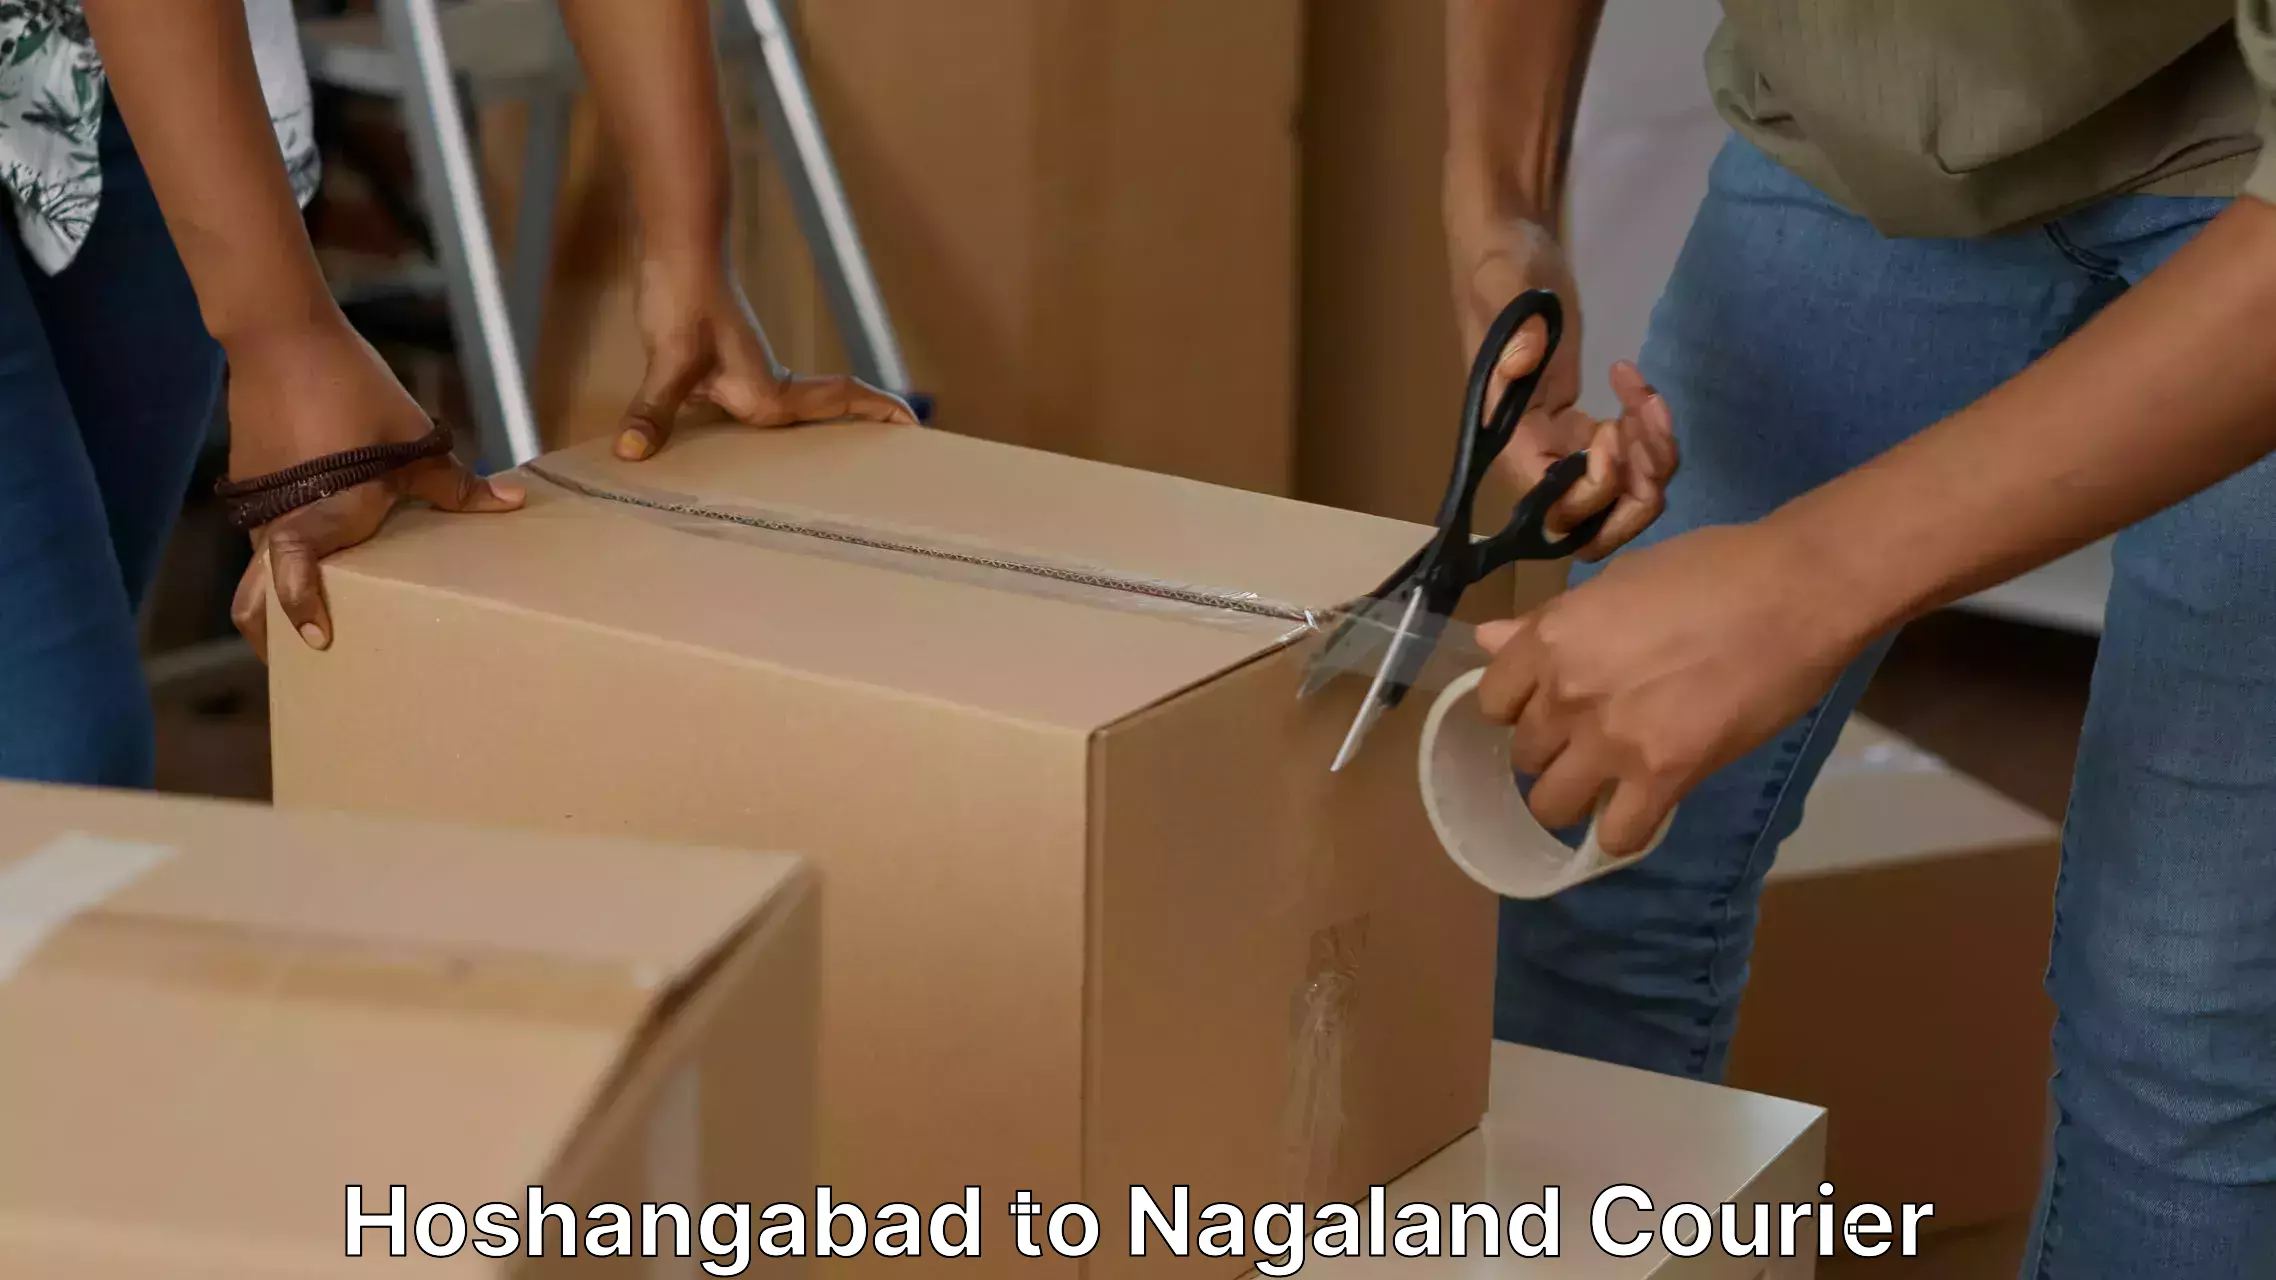 Furniture moving experts Hoshangabad to NIT Nagaland